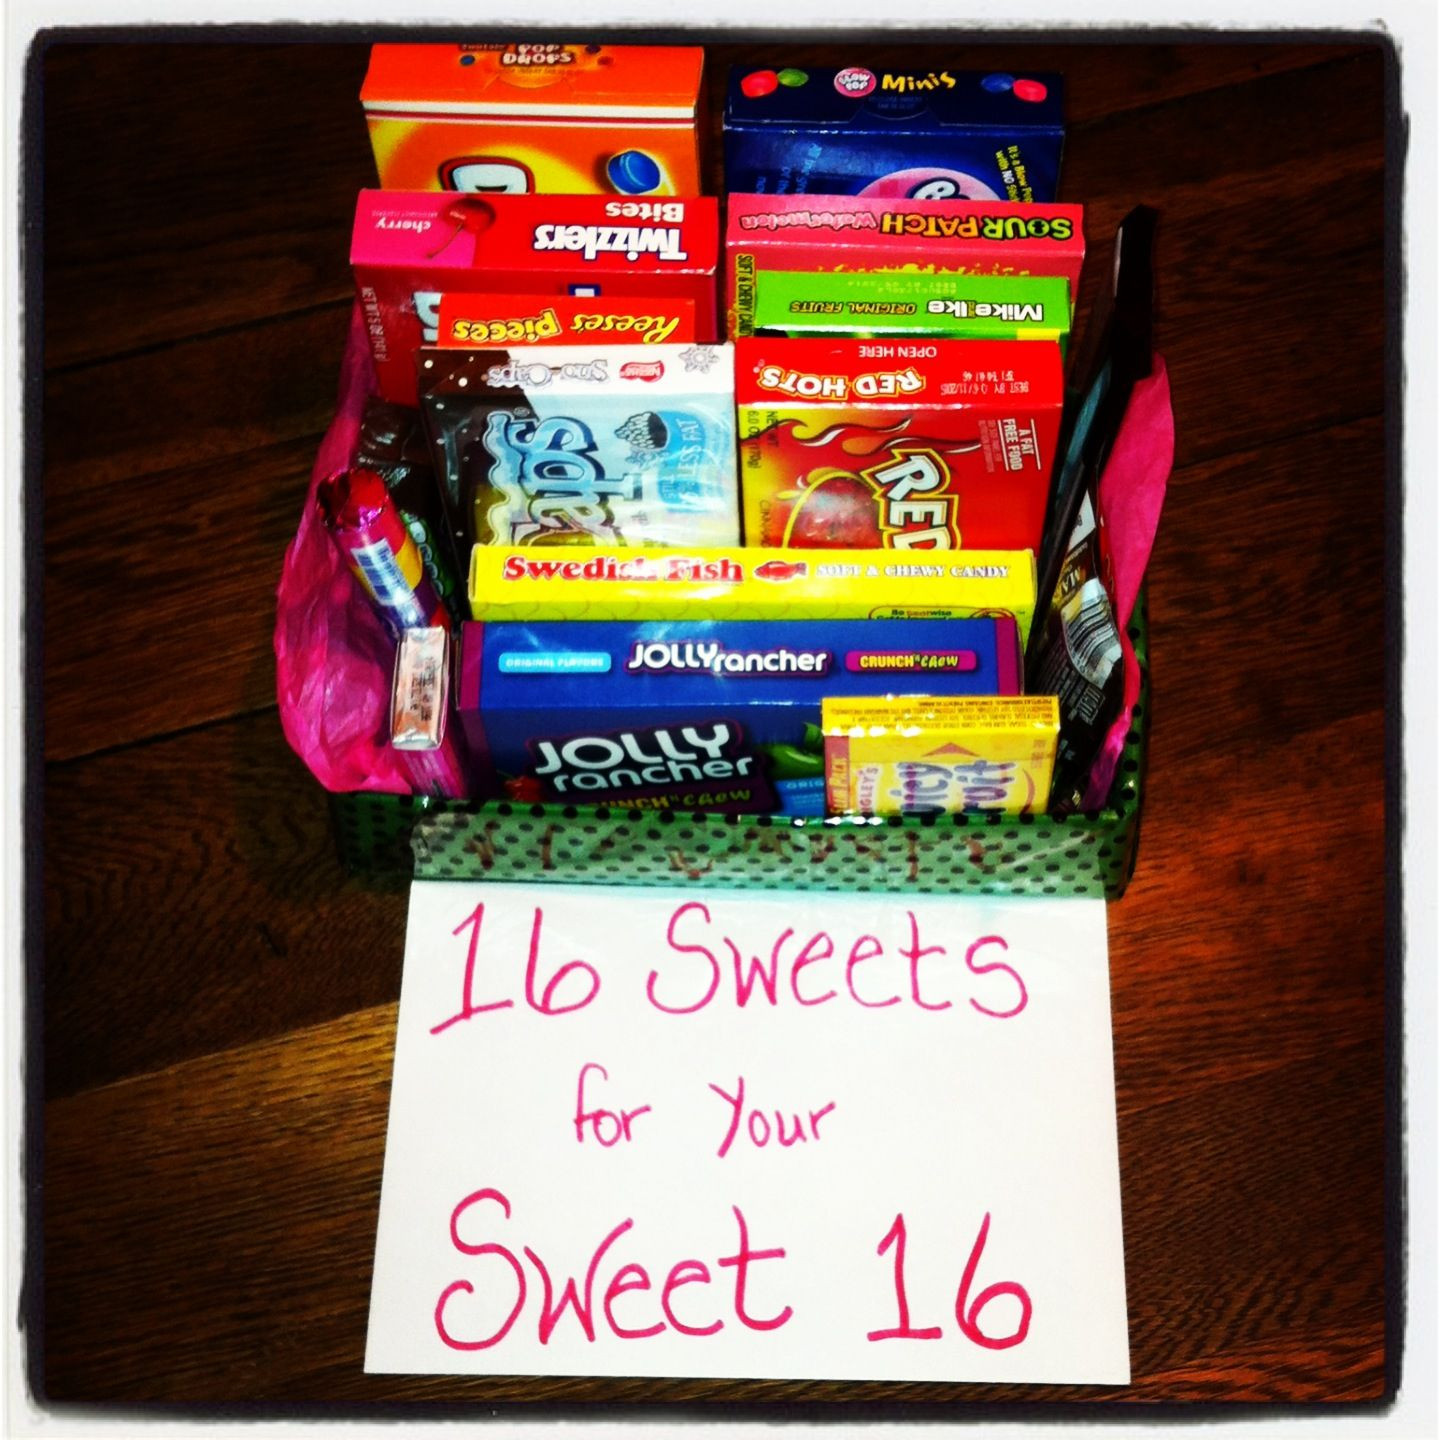 Sixteenth Birthday Gift Ideas
 Best 25 Sweet 16 ts ideas on Pinterest